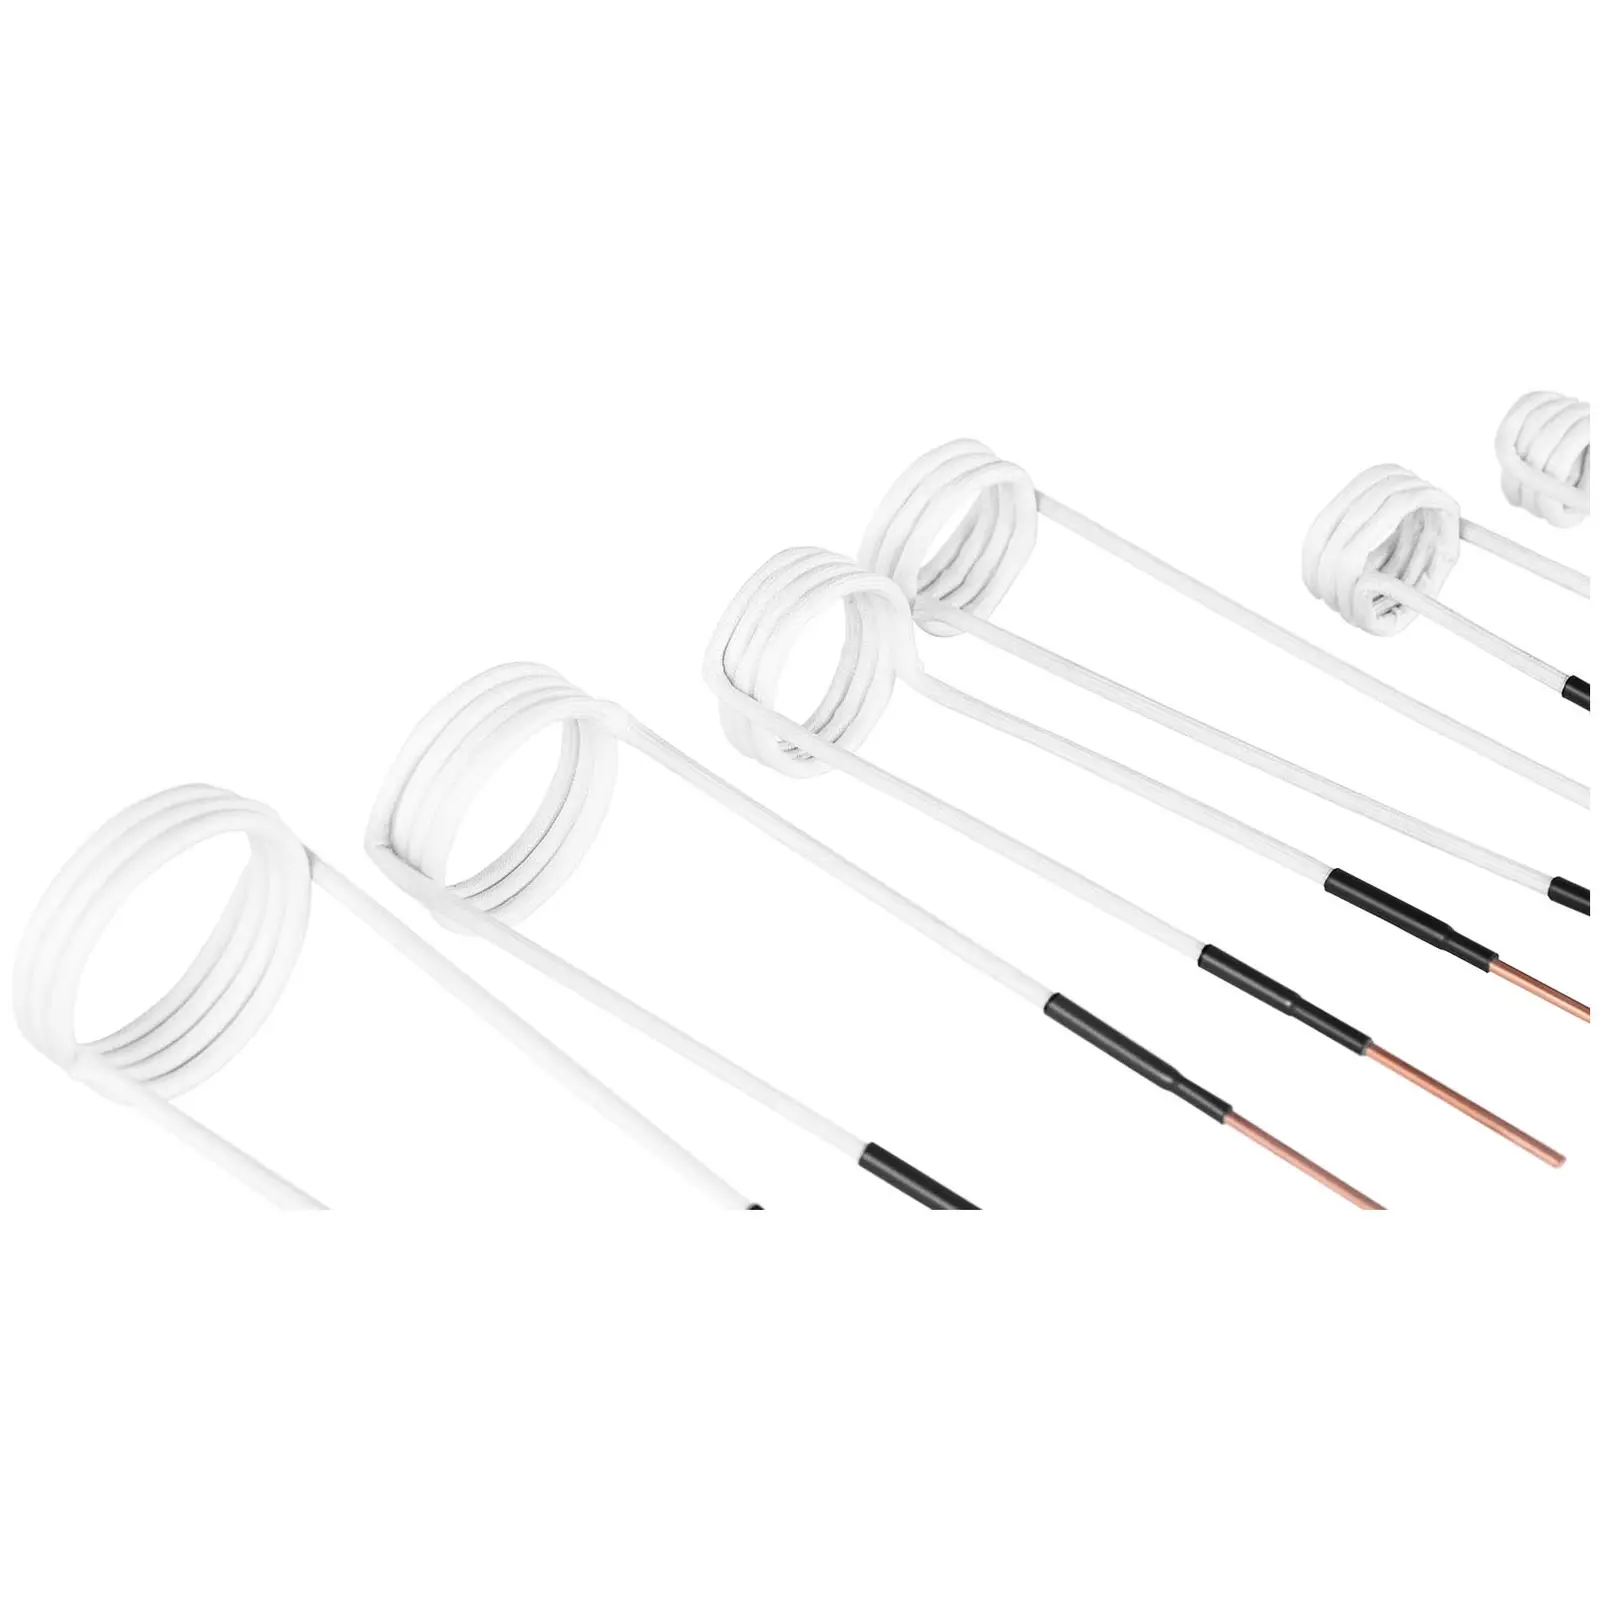 Bobinas de inducción en set - 9 bobinas - 3 - 50 mm - latón / fibra de vidrio